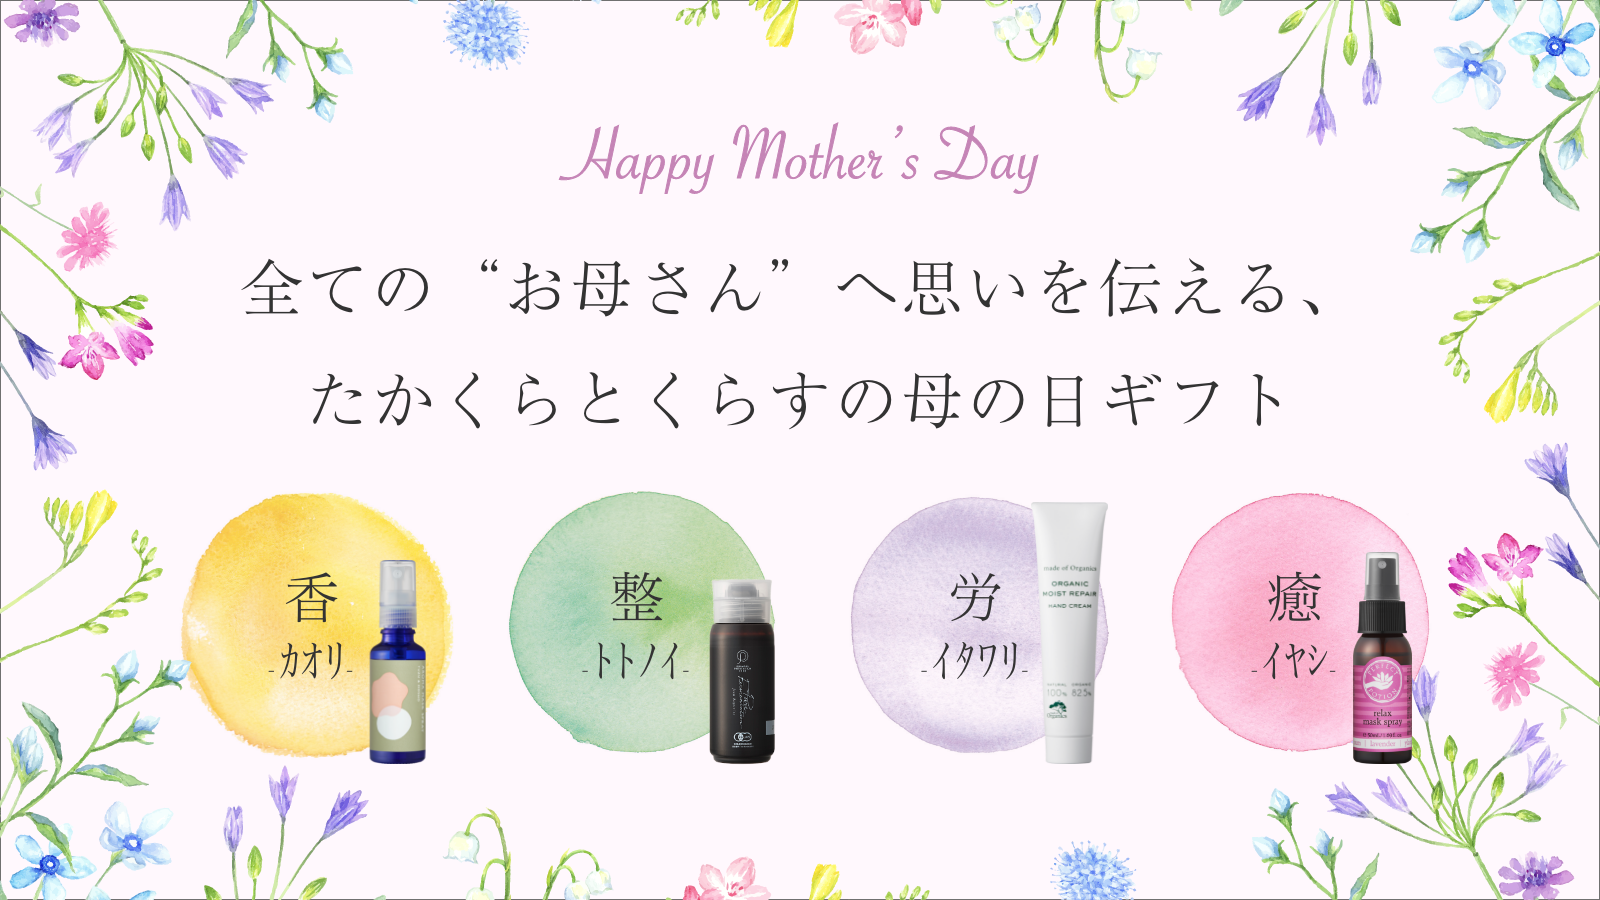 【5月8日(日)は母の日】特別な1日にささやかな彩りのお手伝い。たかくらとくらすの母の日。